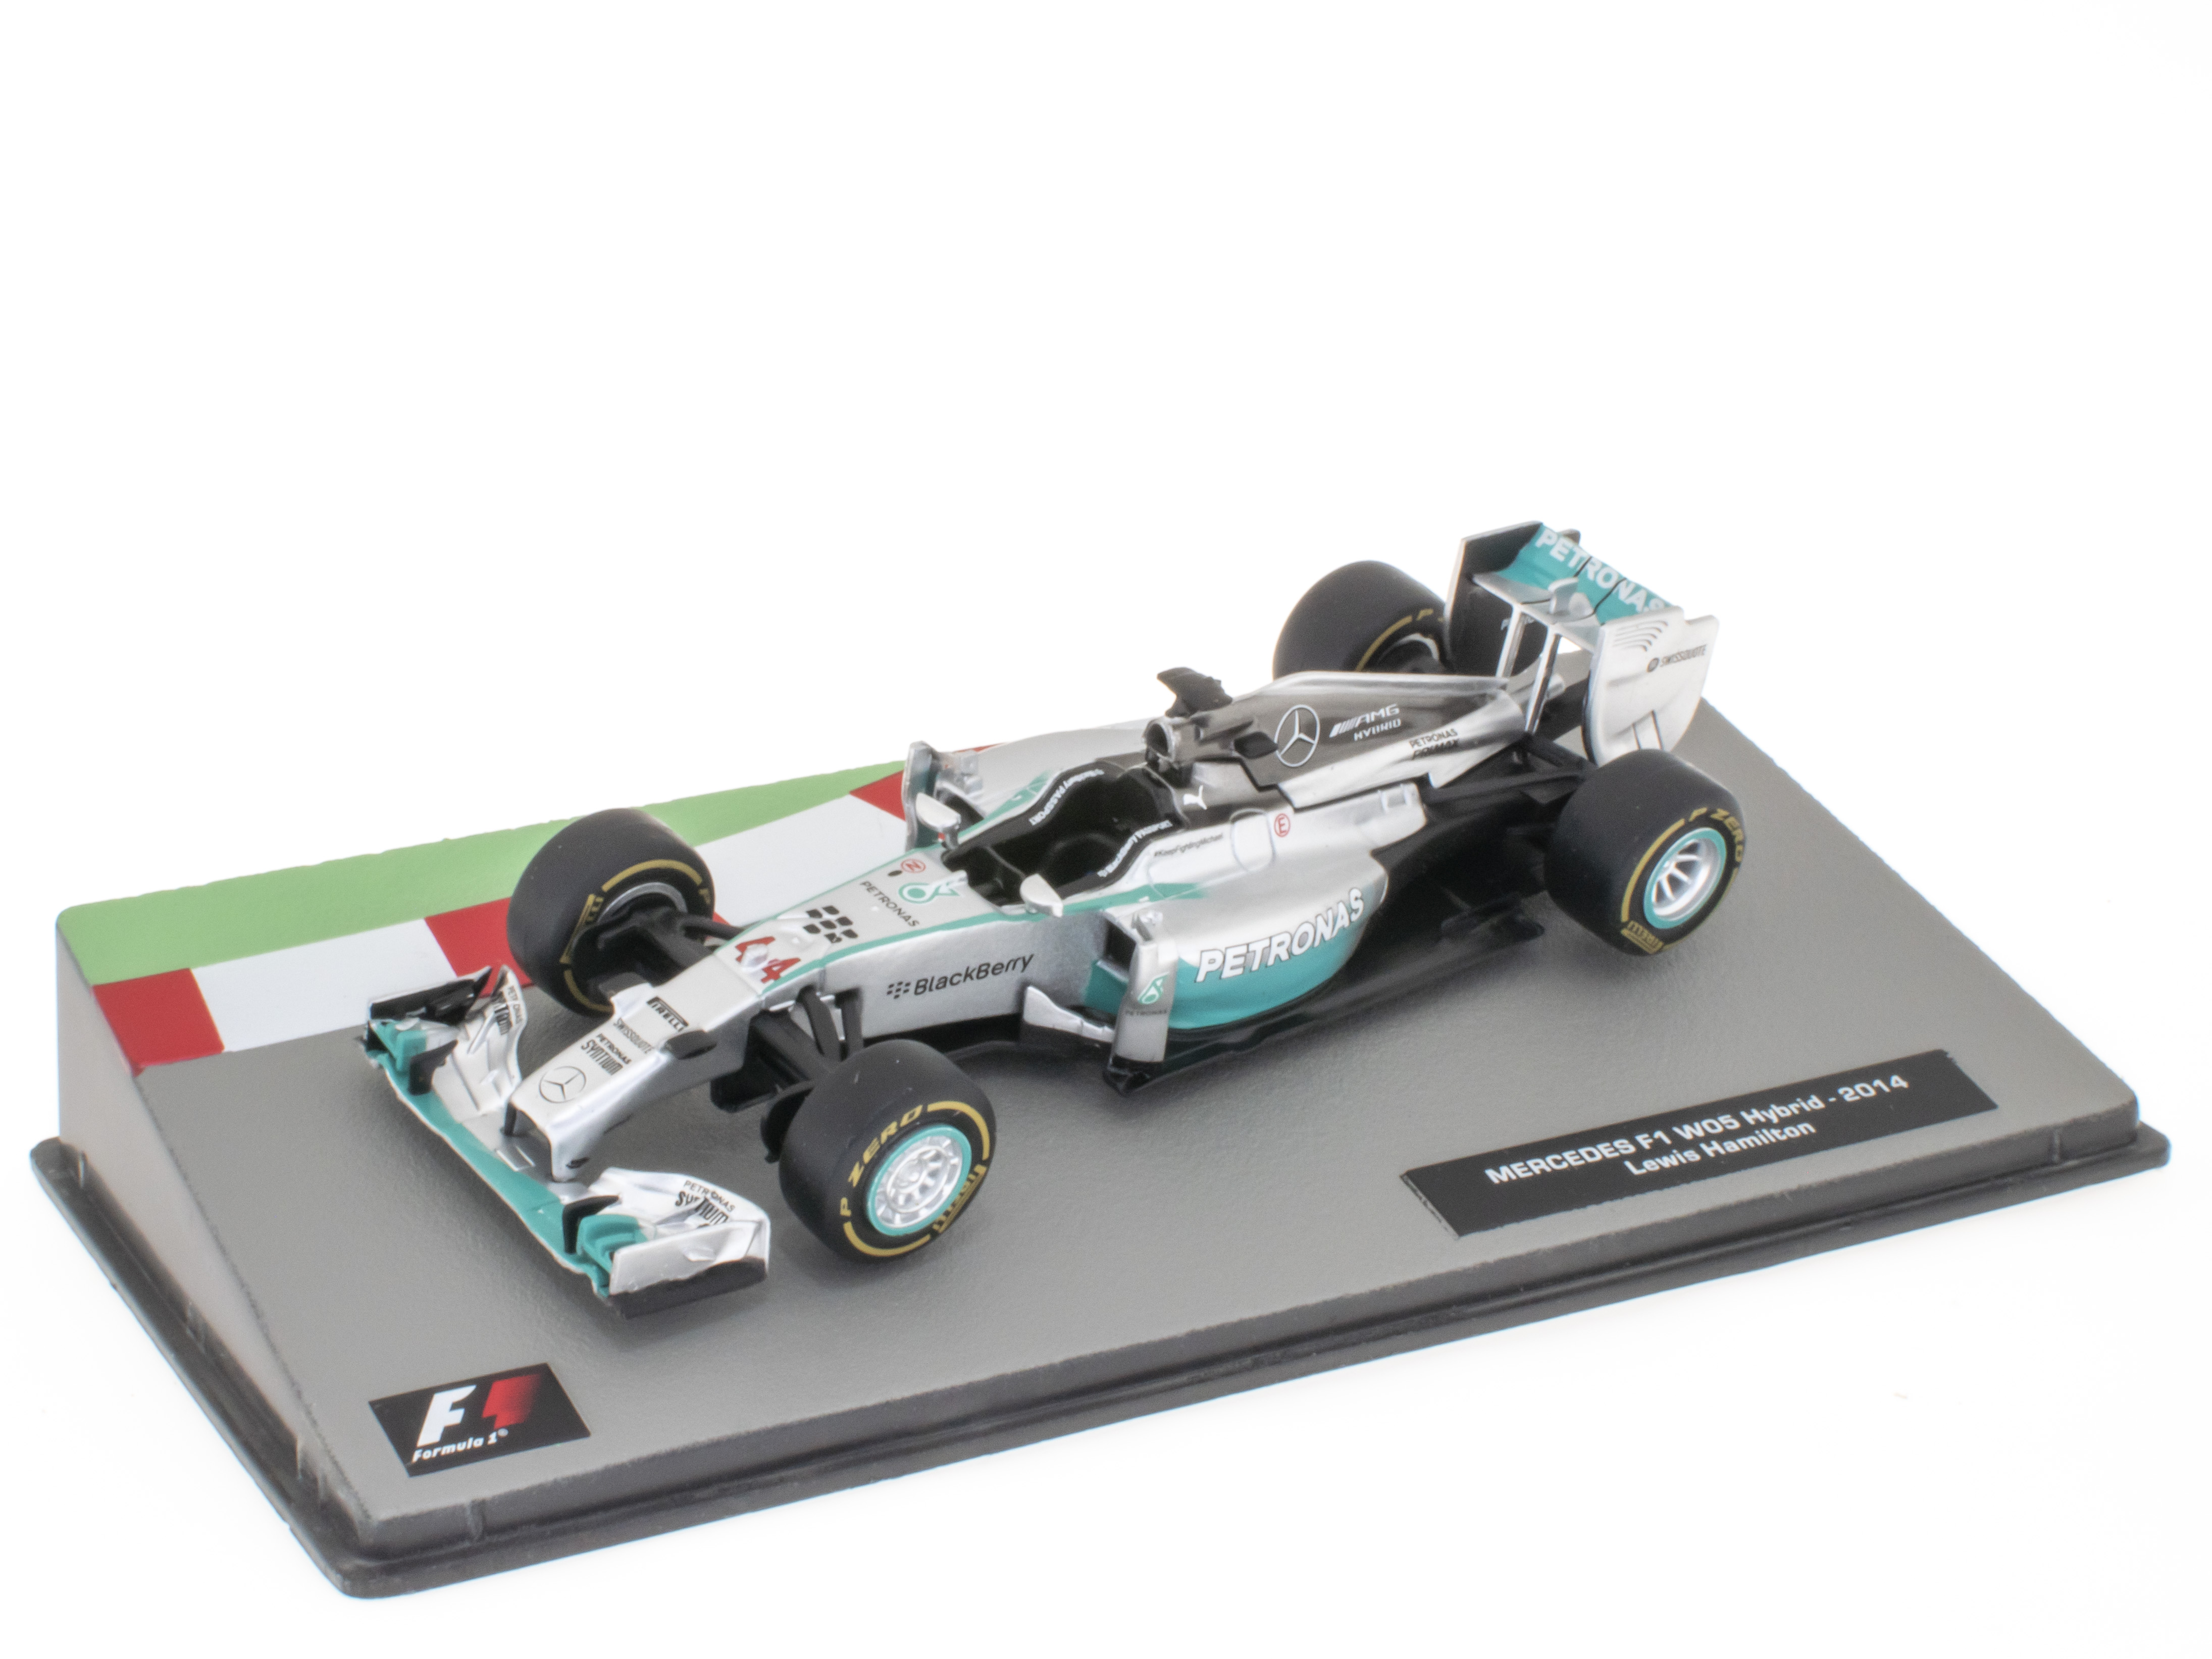 MERCEDES F1 W05 Hybrid - Lewis Hamilton - 2014